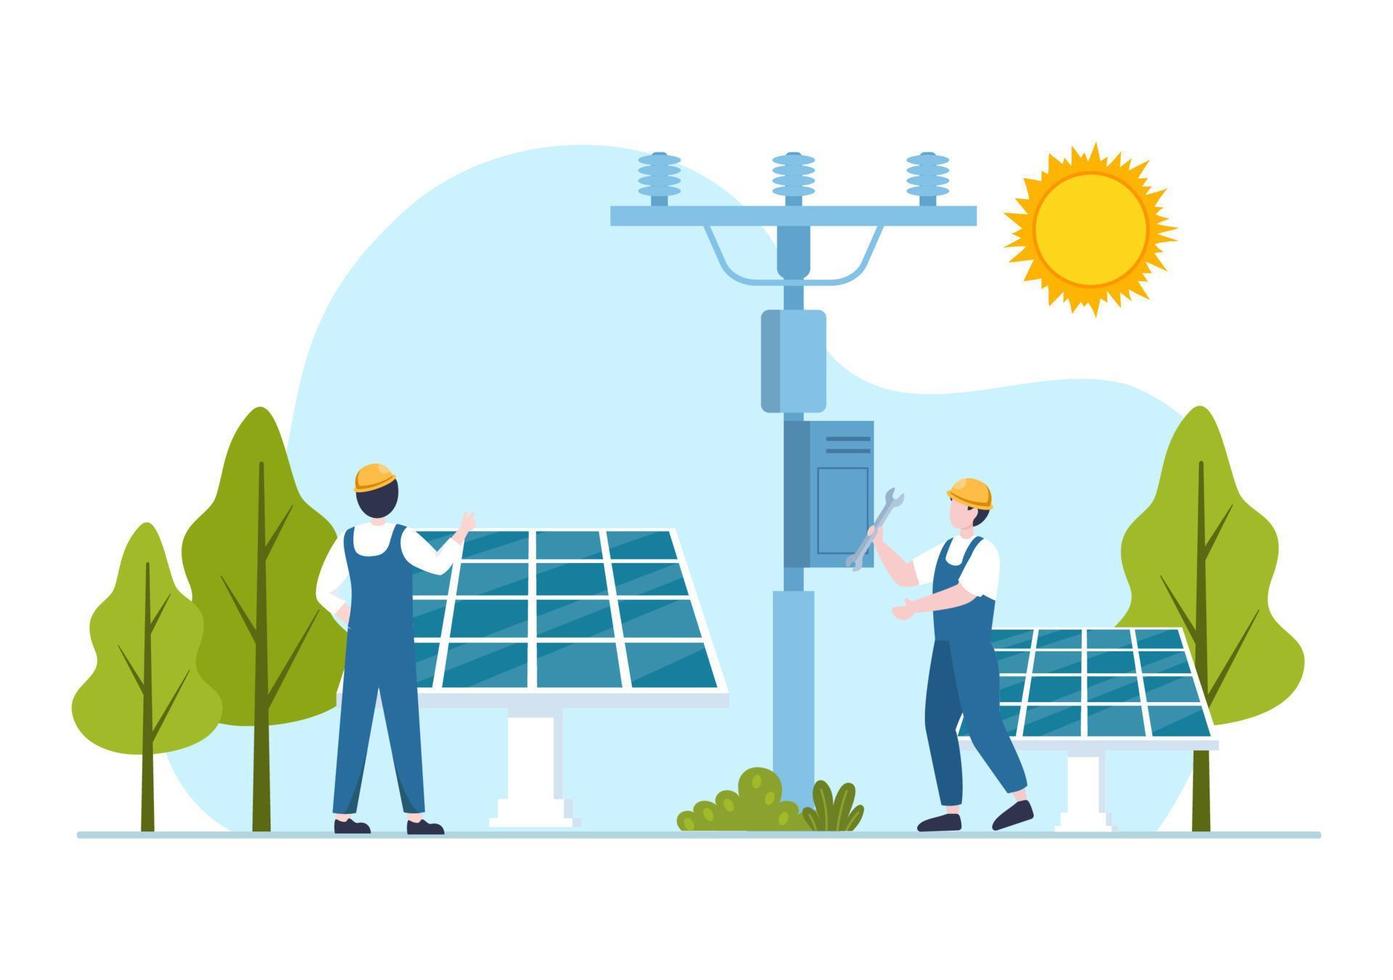 instalación de energía solar, mantenimiento de paneles o turbinas eólicas con equipo de servicio a domicilio para el funcionamiento de la red eléctrica en la ilustración de dibujos animados vector